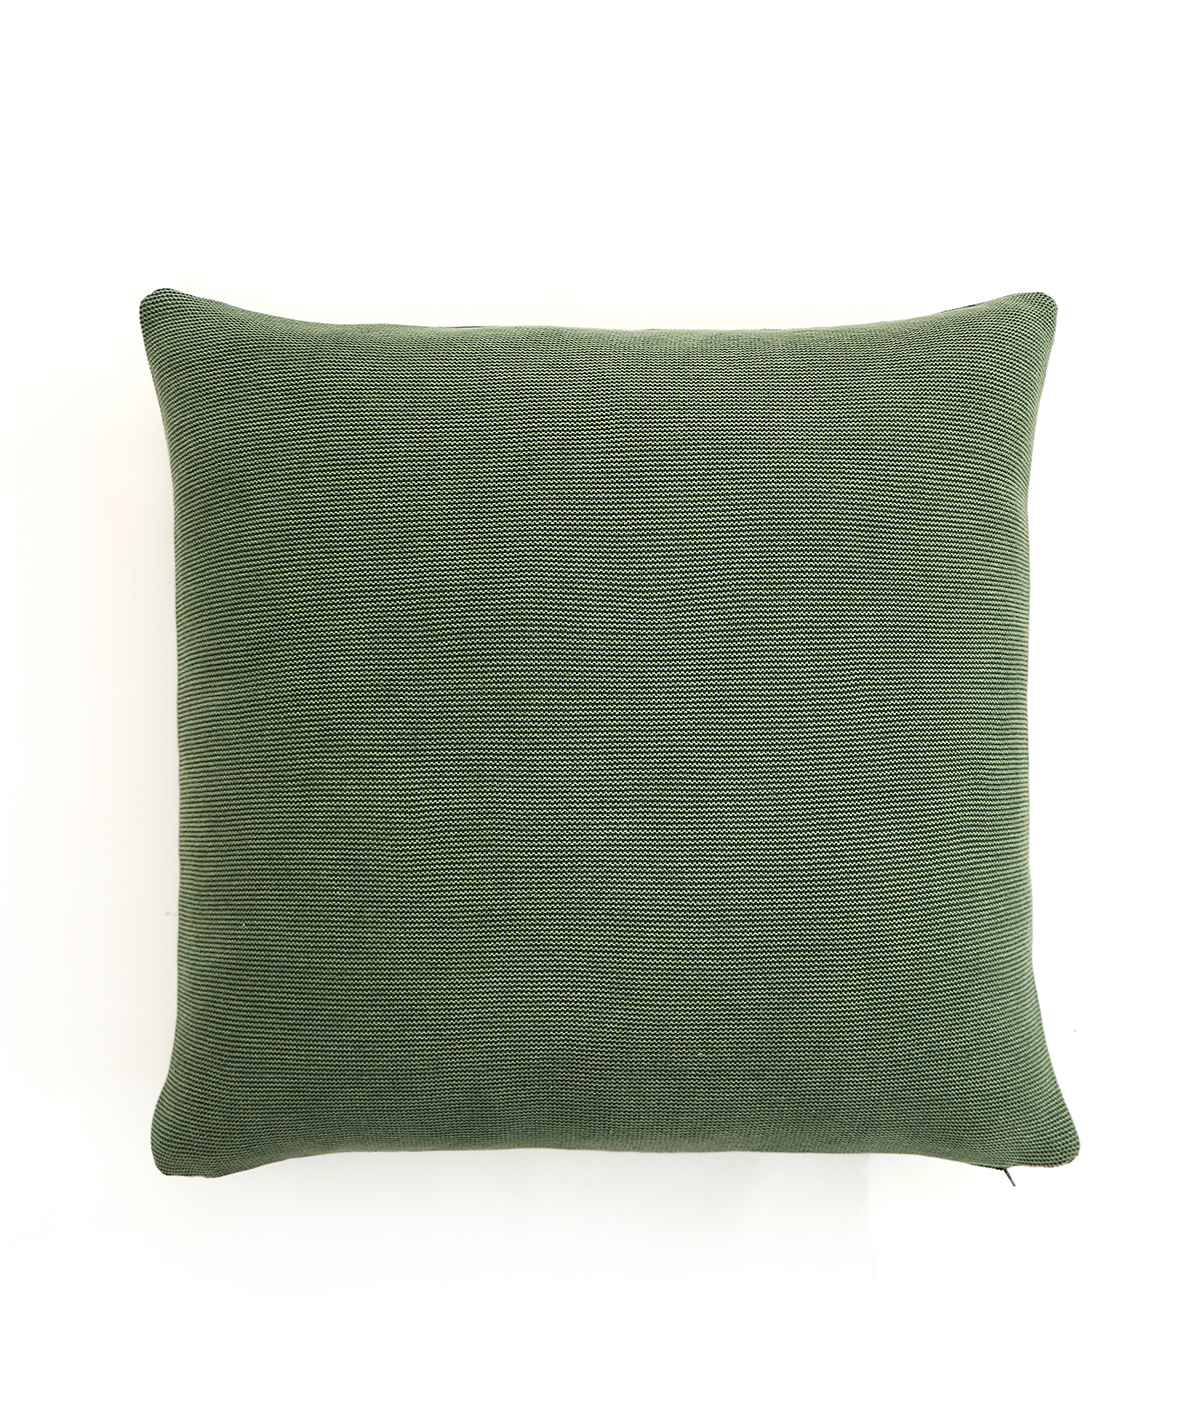 cushion cover